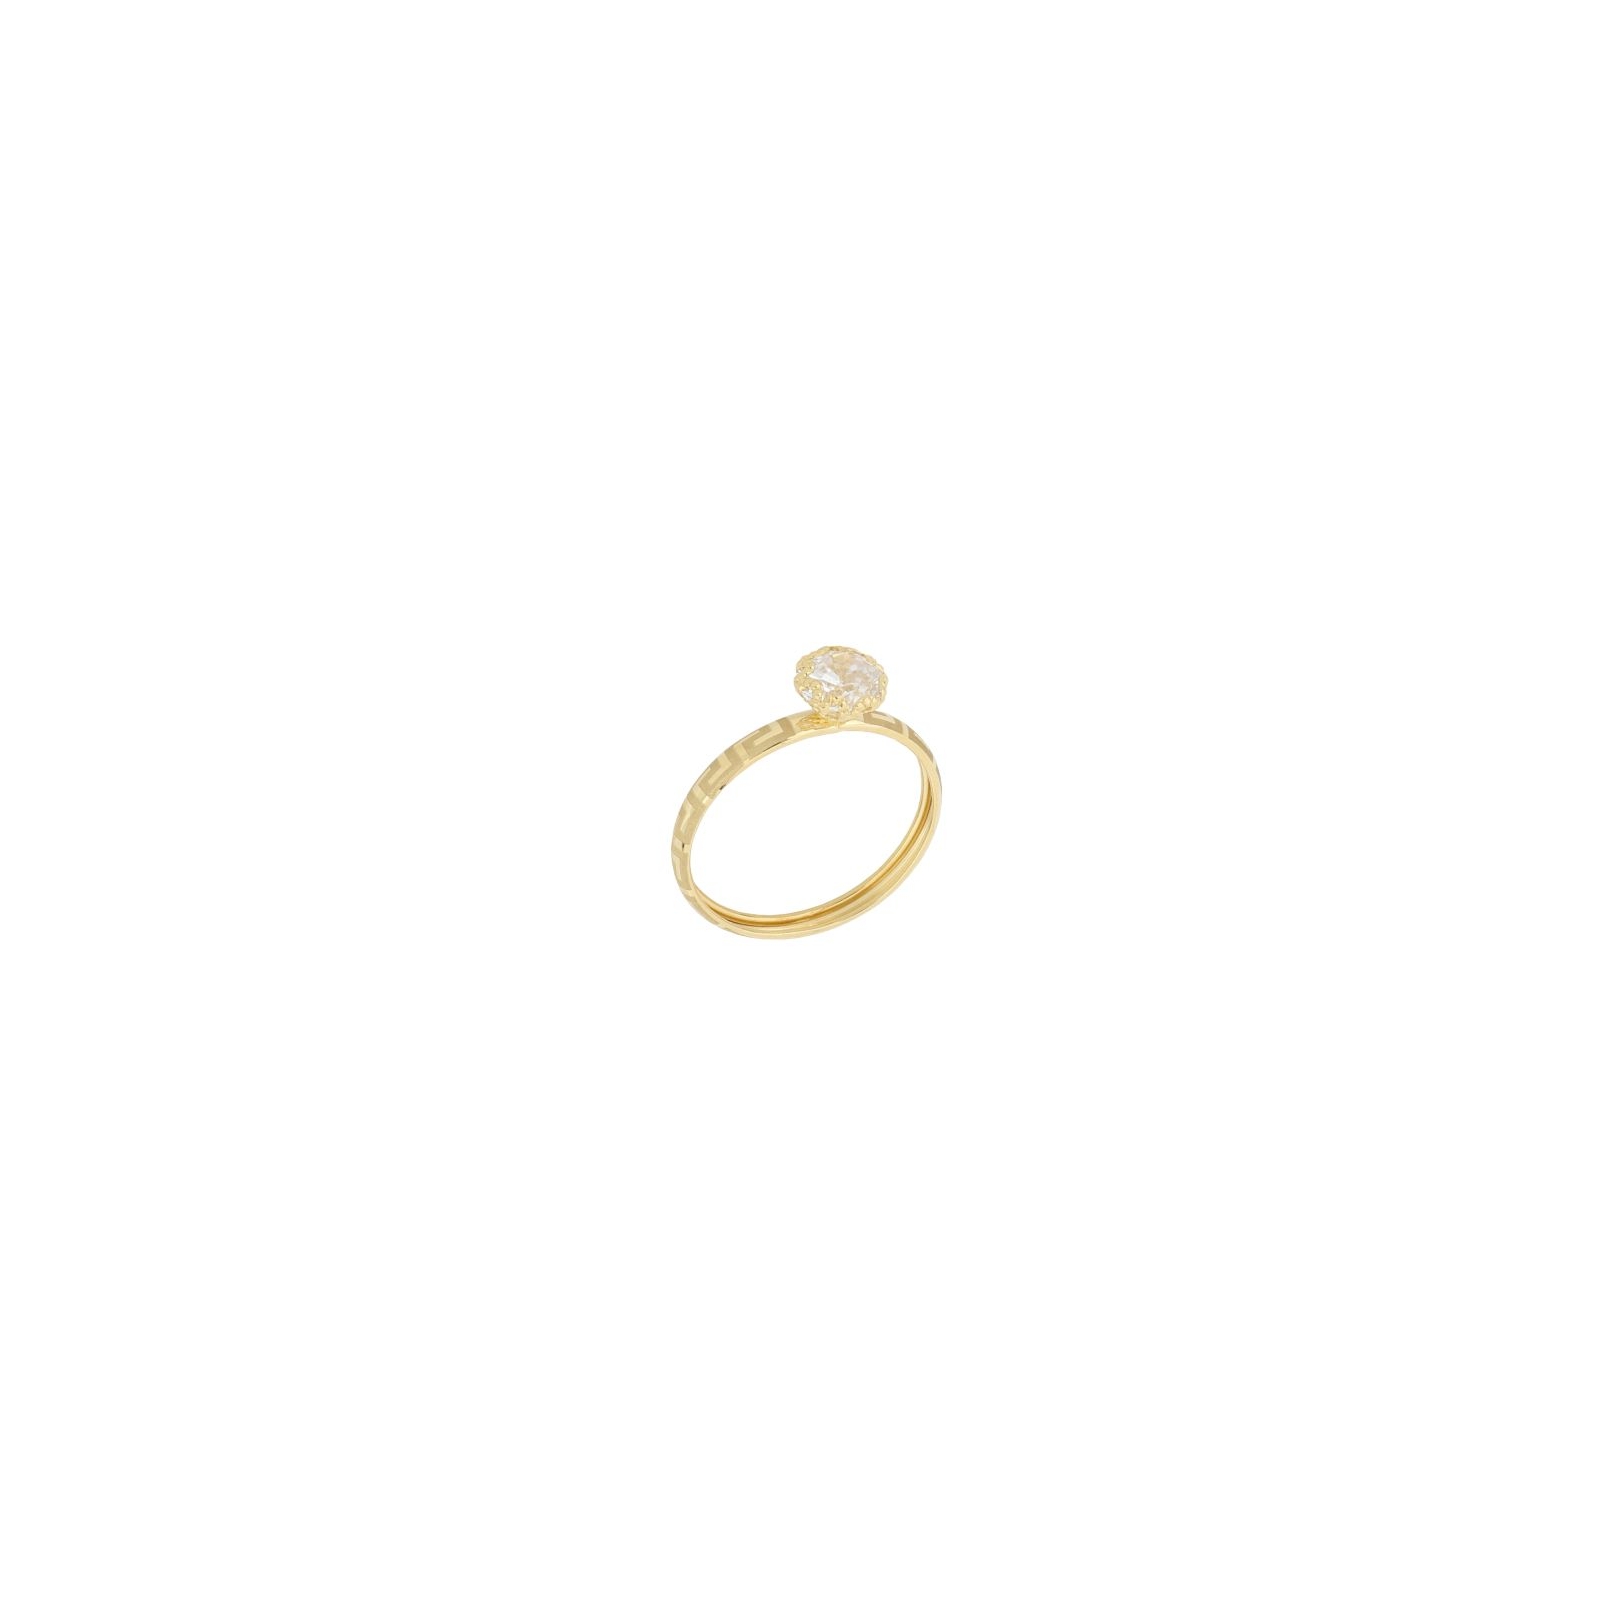 anello con greca in oro 750